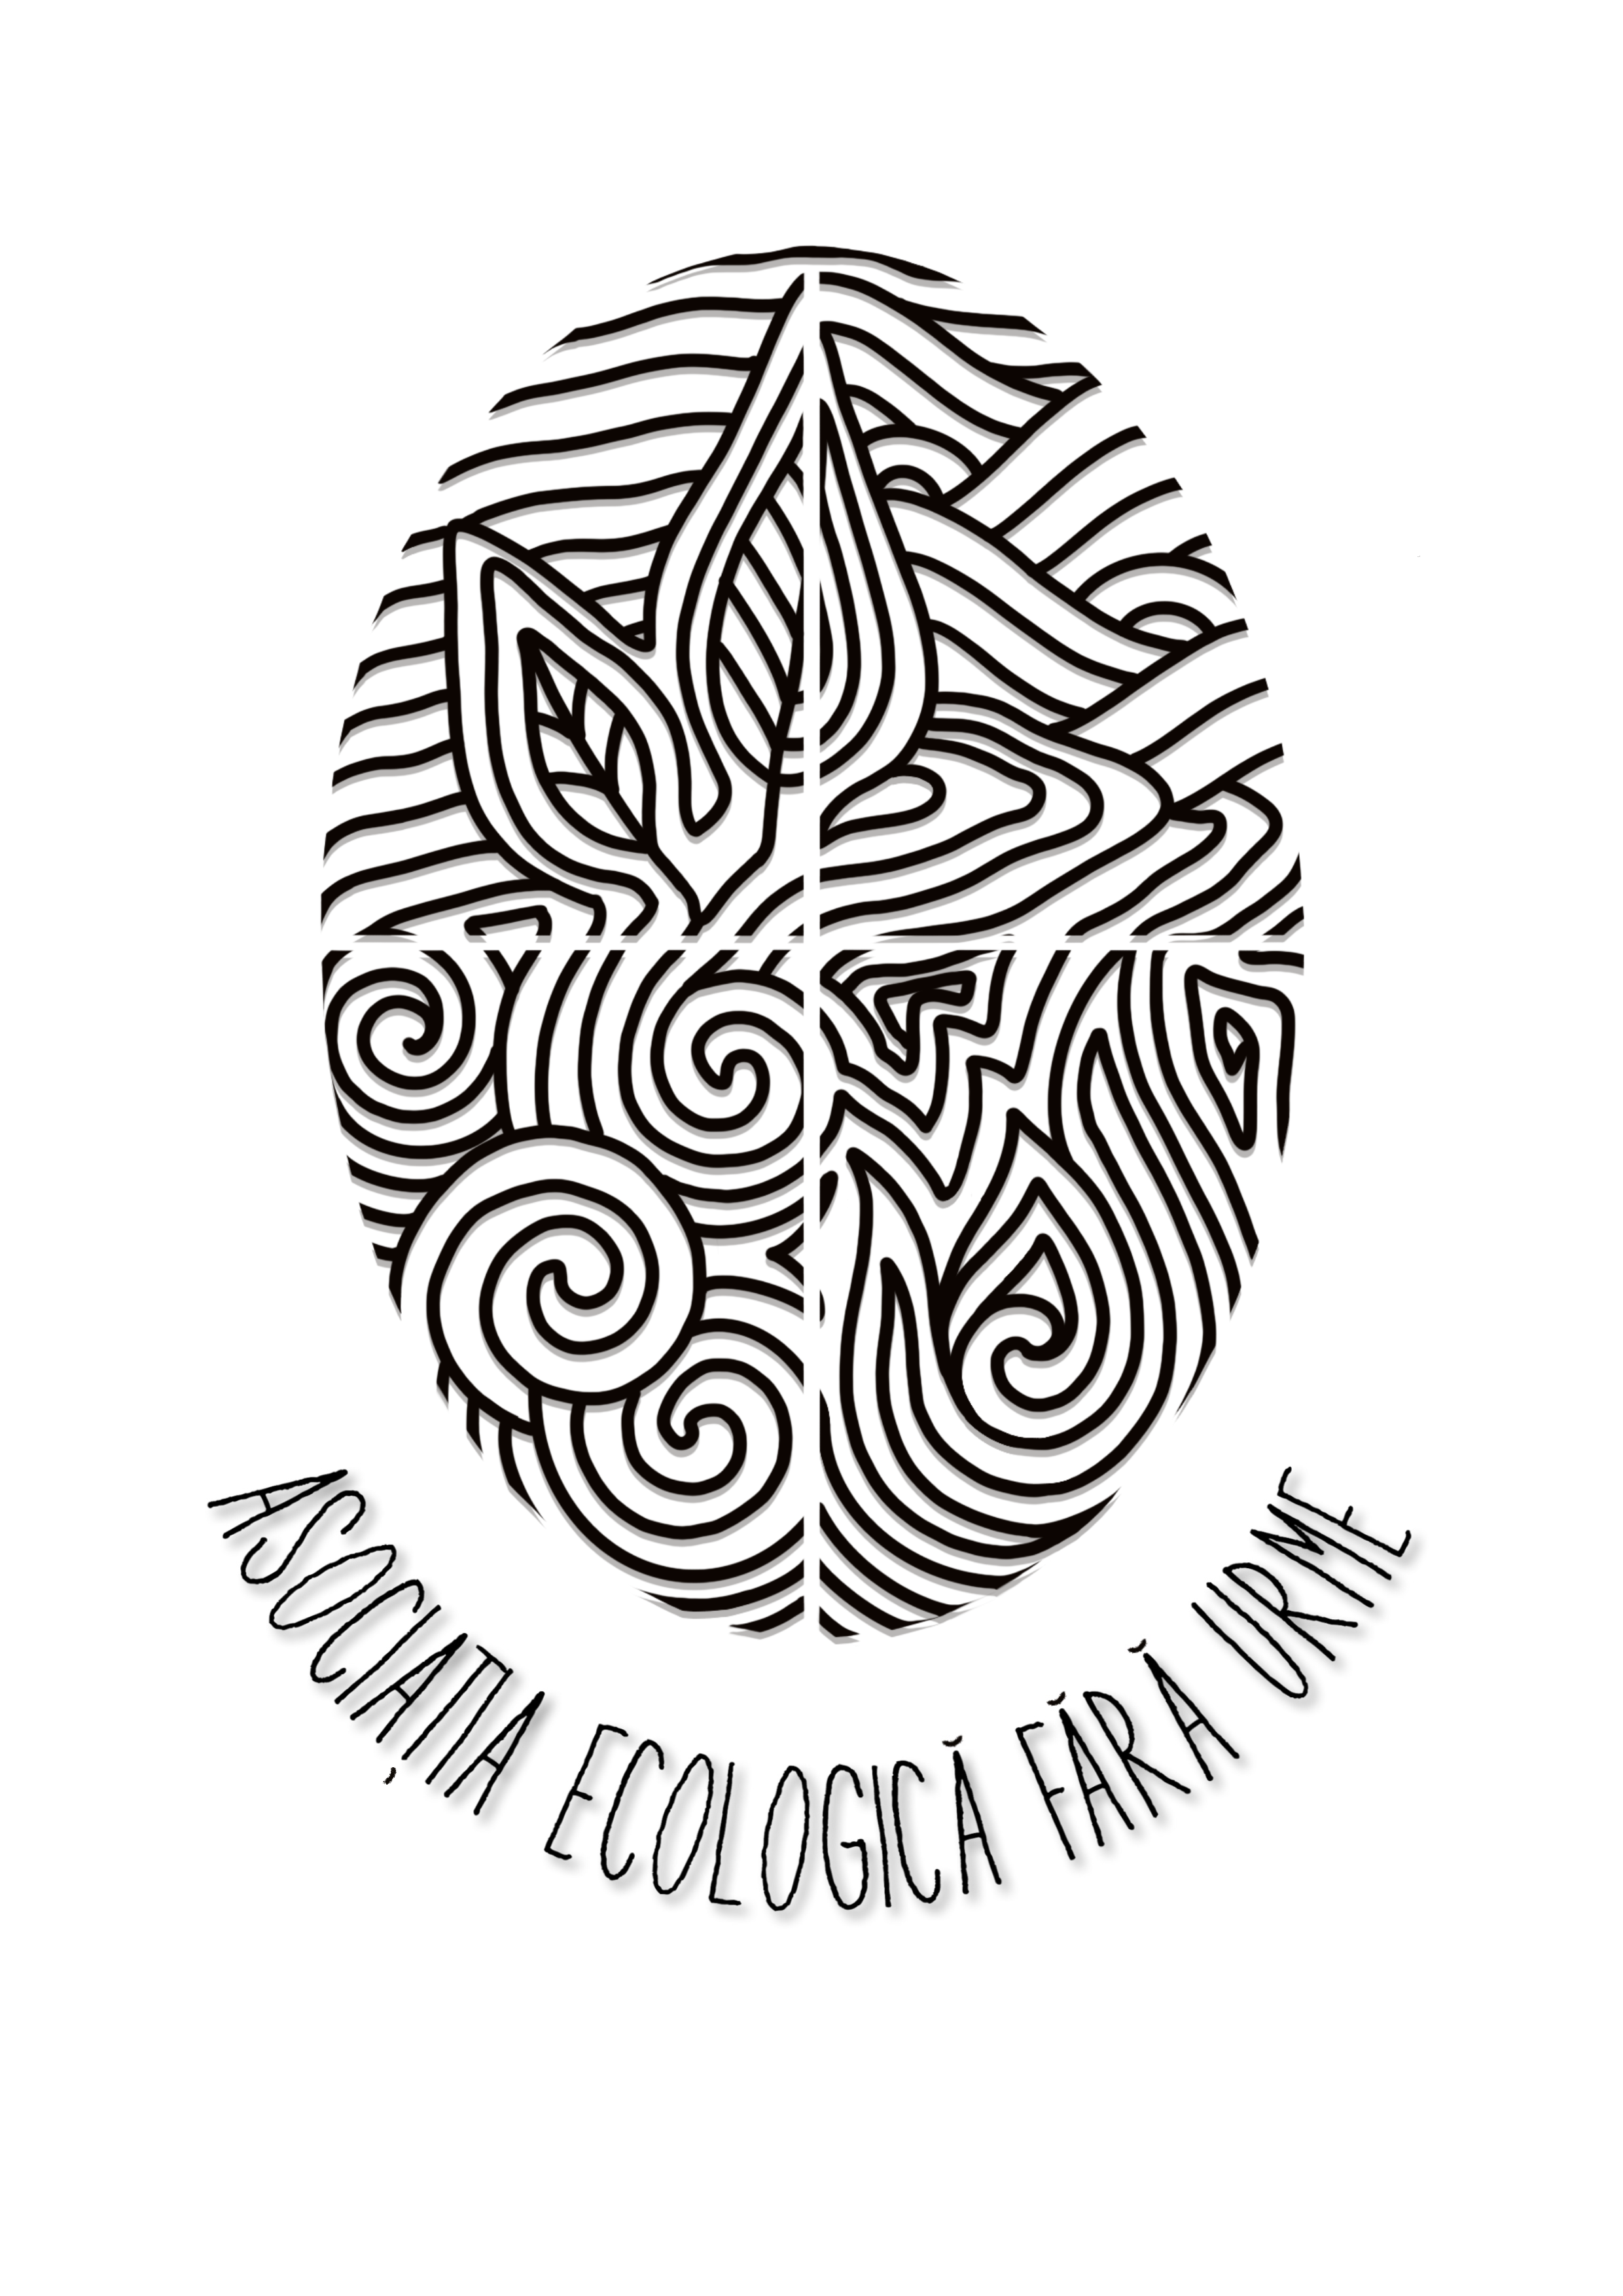 Asociatia Ecologica Fara Urme logo